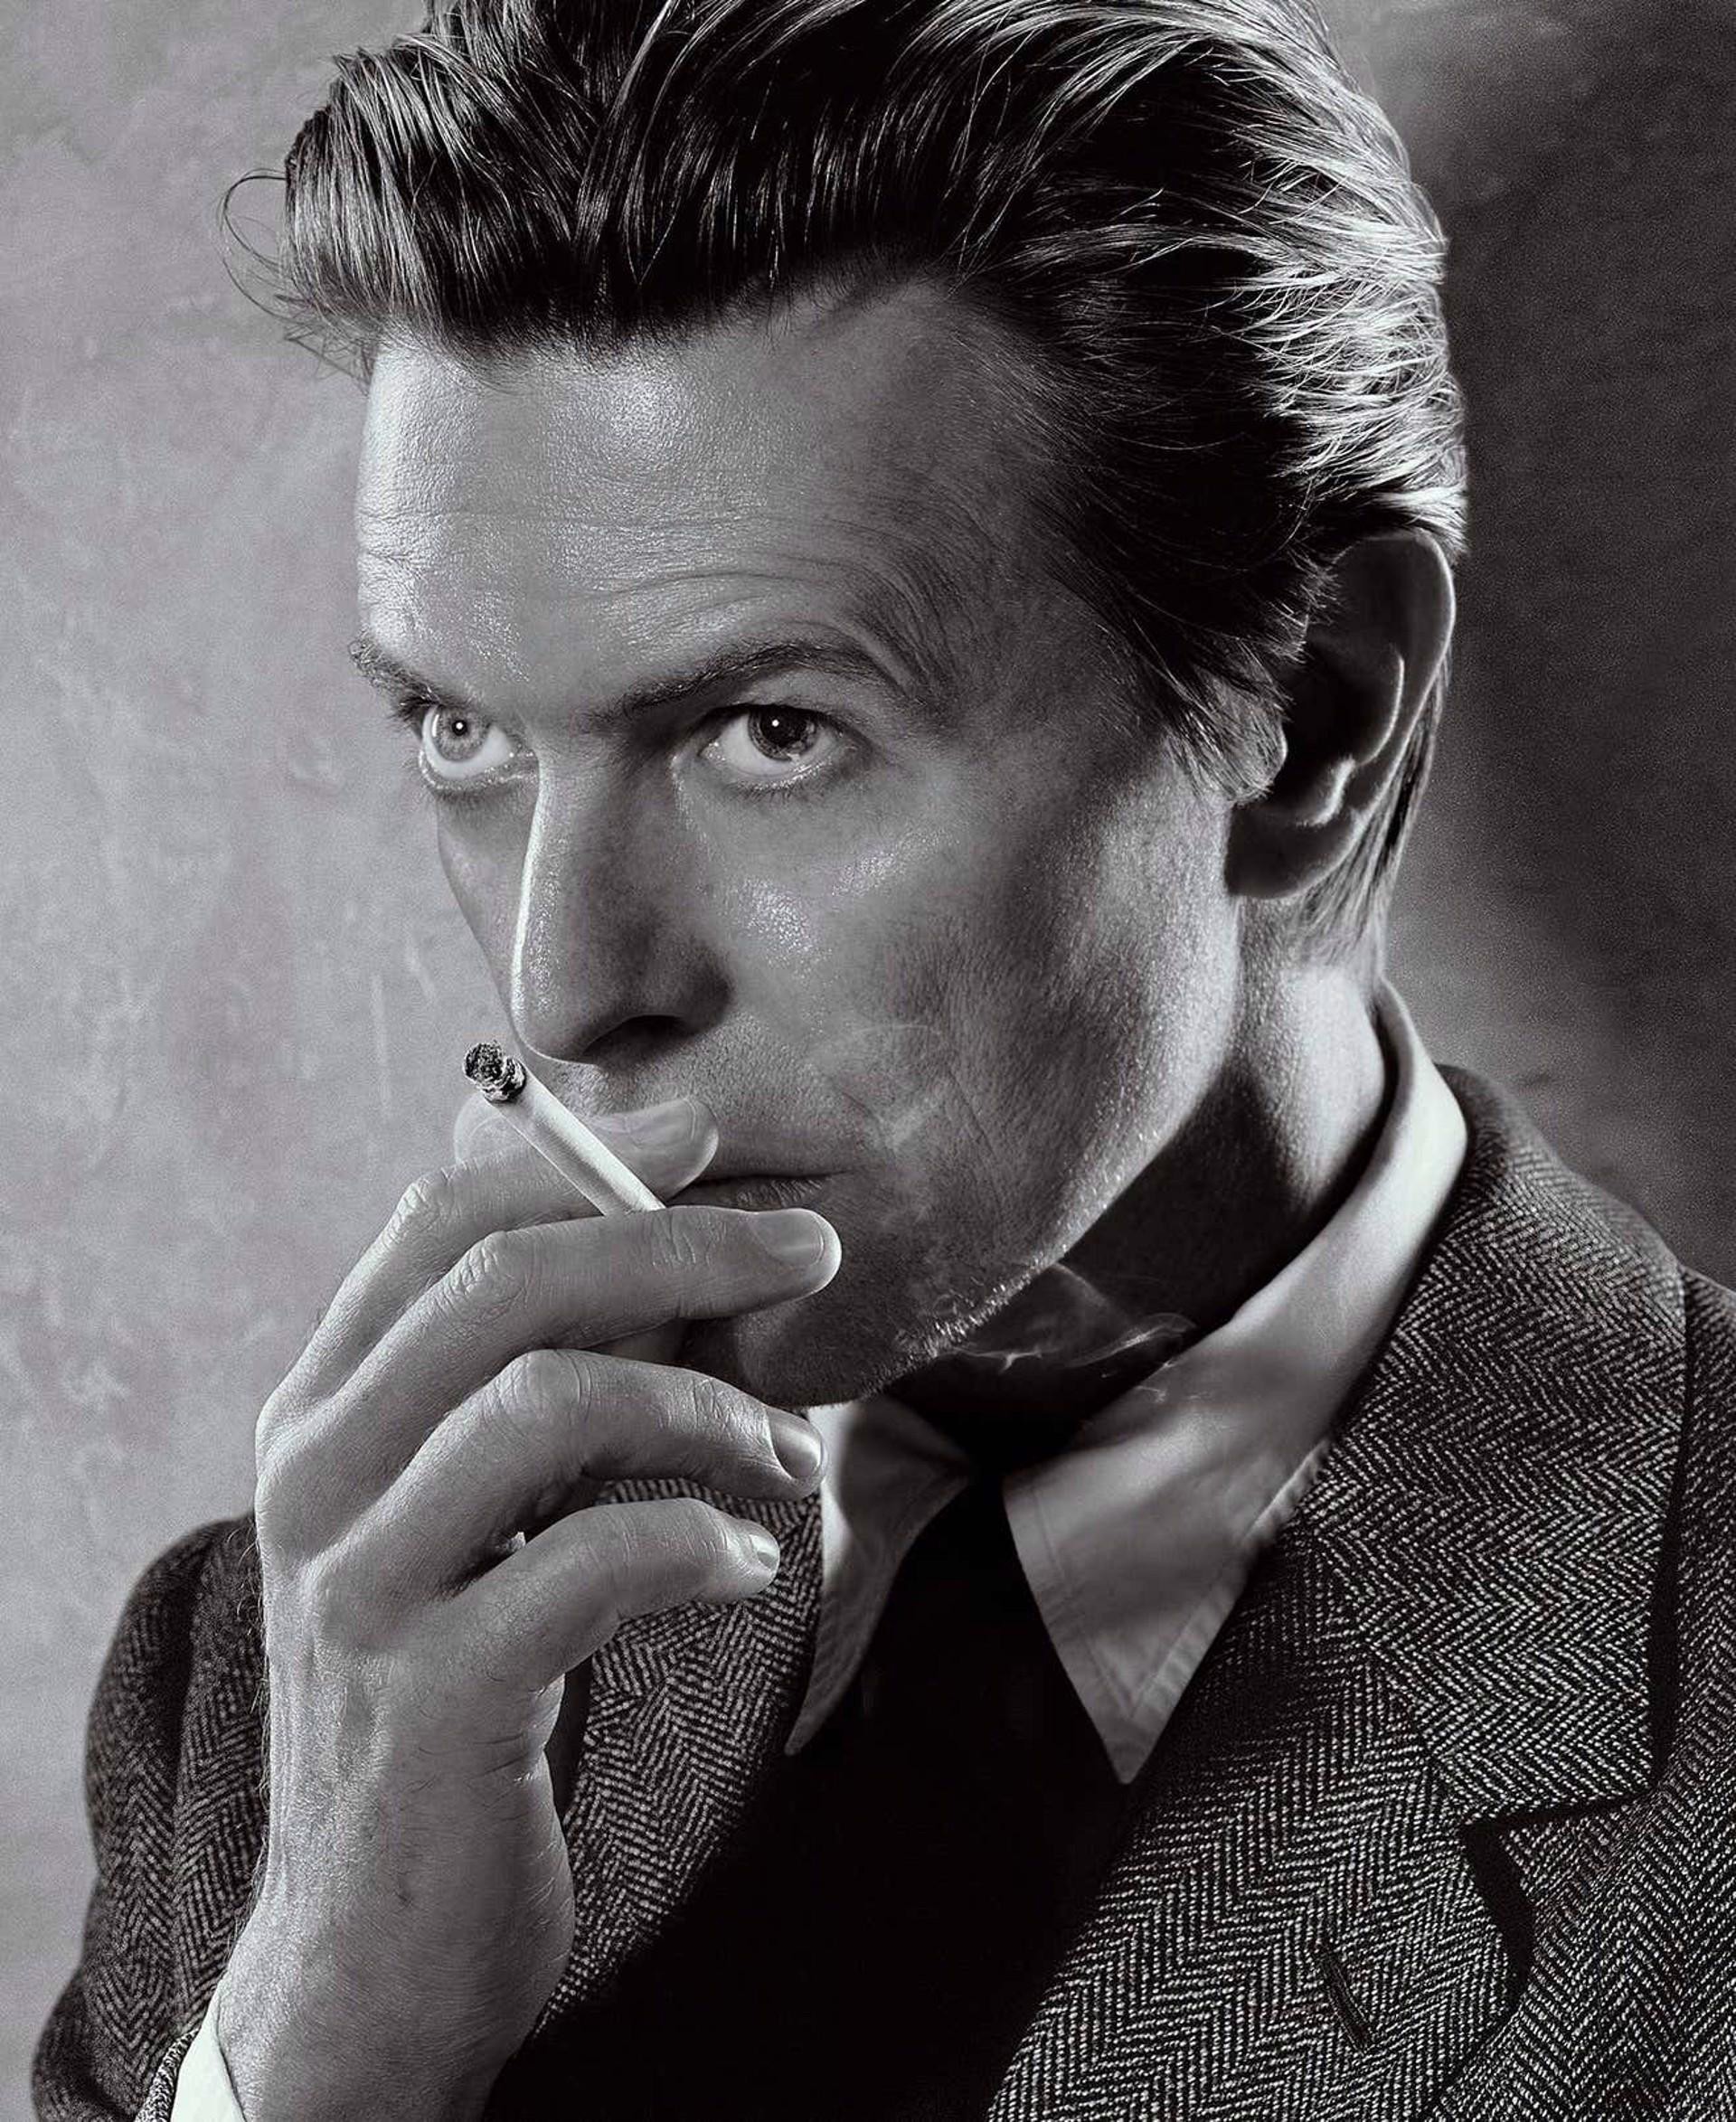 Smoking, David Bowie (New York, 2001) by Markus Klinko